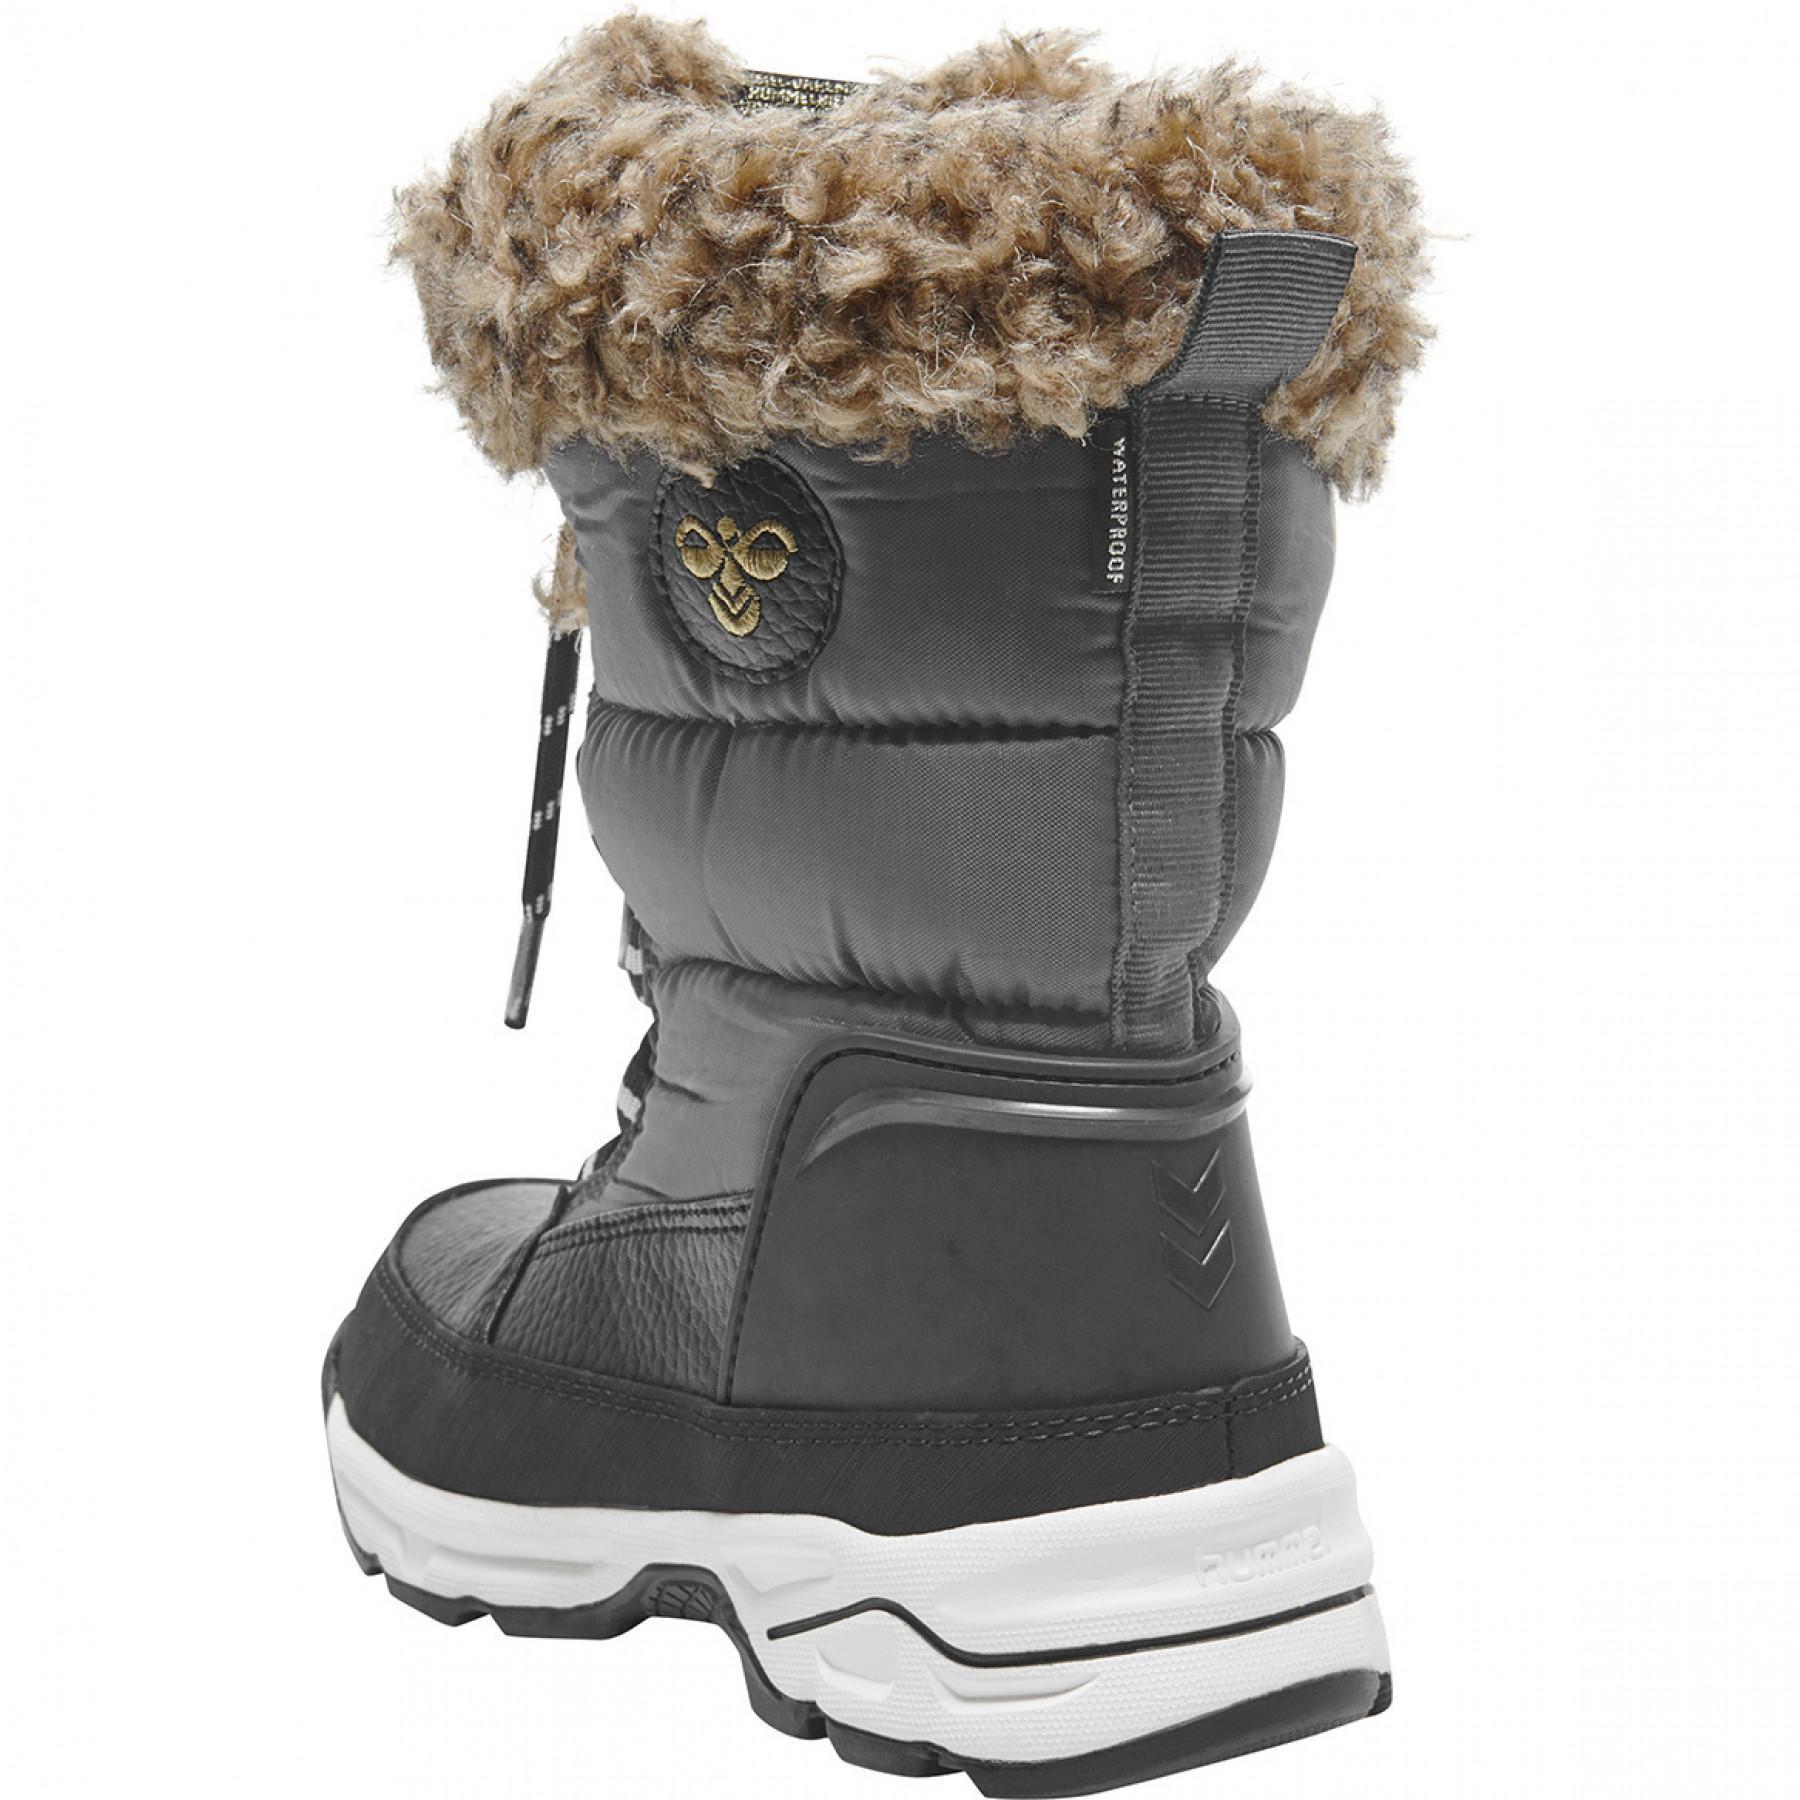 Baskets enfant Hummel snow boot